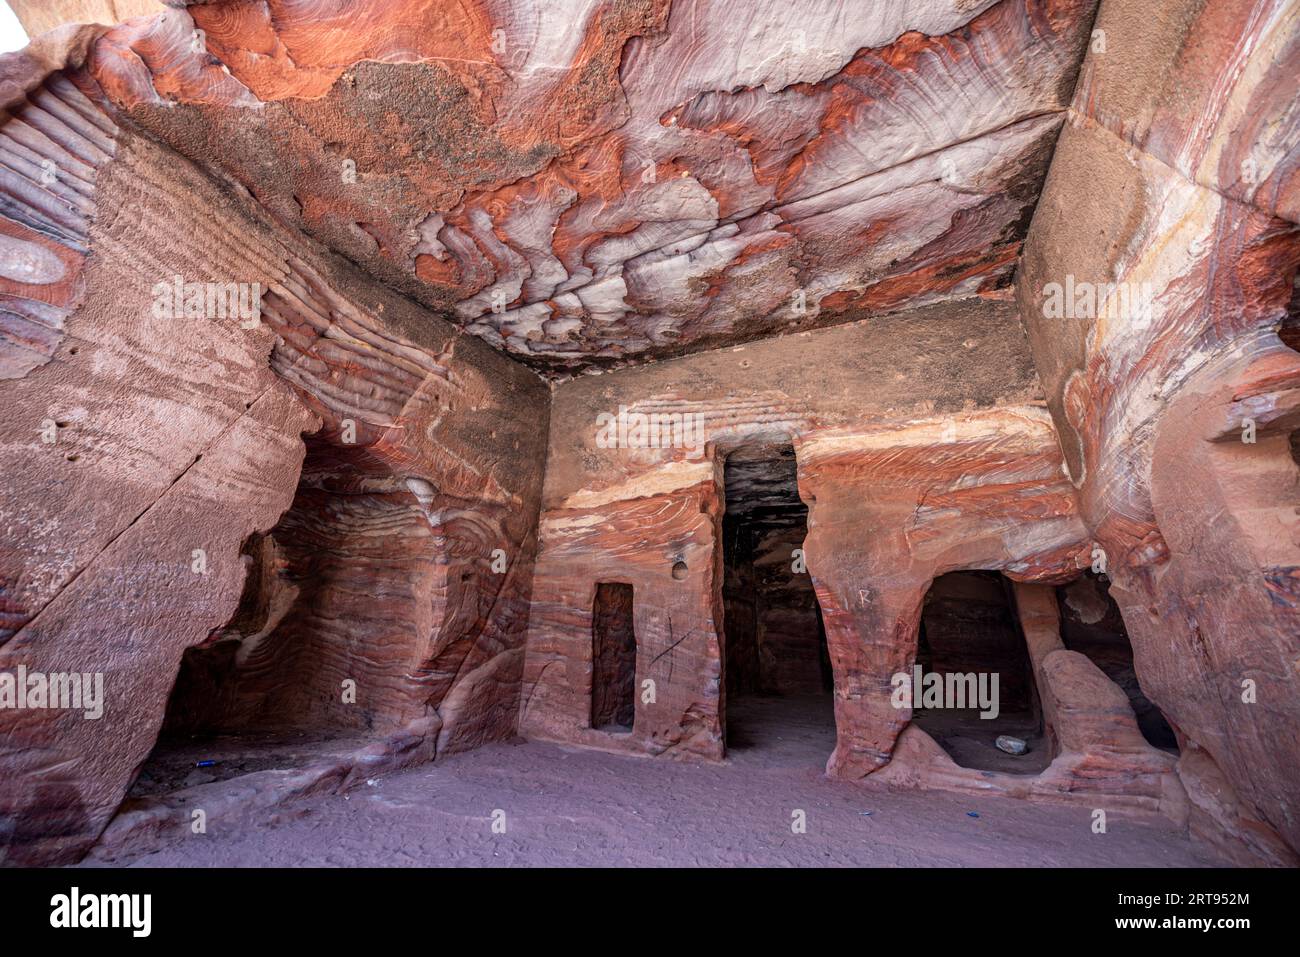 Roches variées colorées dans des tombes sculptées, site archéologique de Petra, Jordanie Banque D'Images